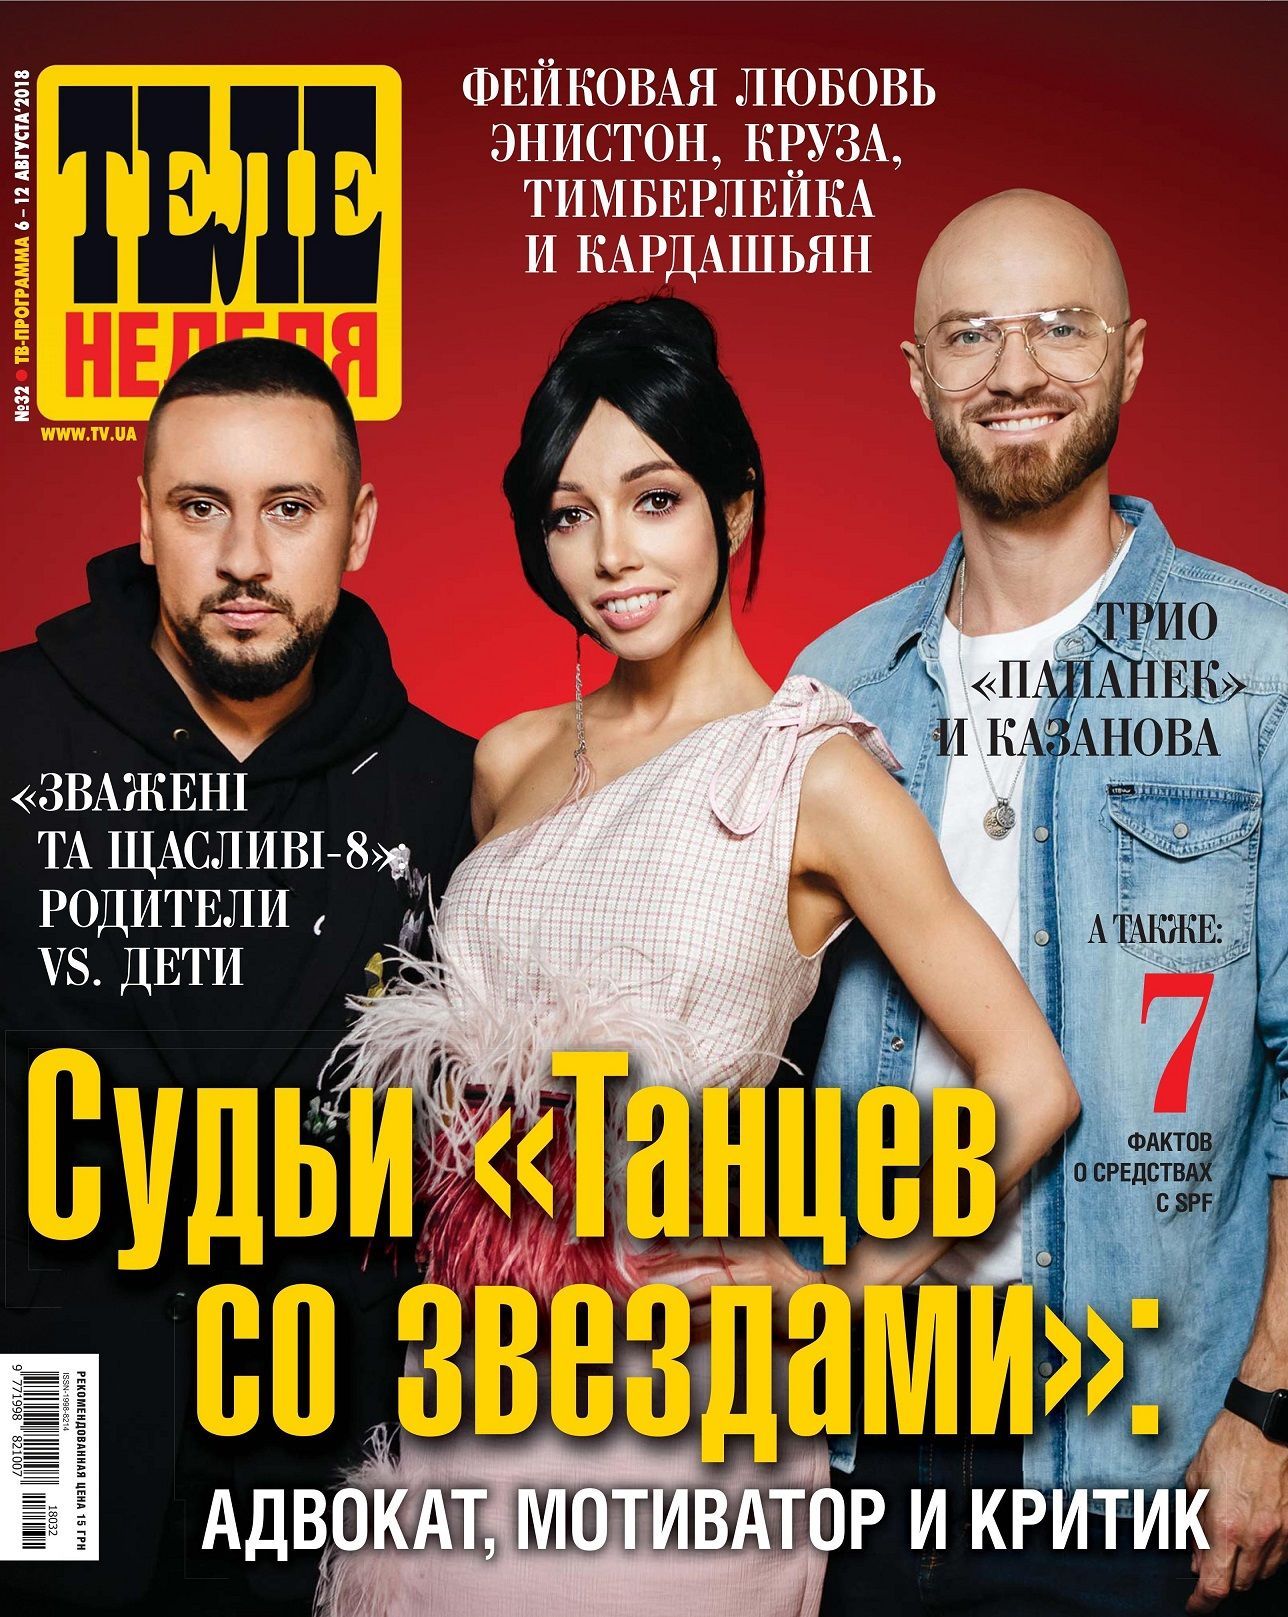 Танці з зірками-2018: MONATIK, Влад Яма и Екатерина Кухар рассказали о критике на шоу - фото 139187